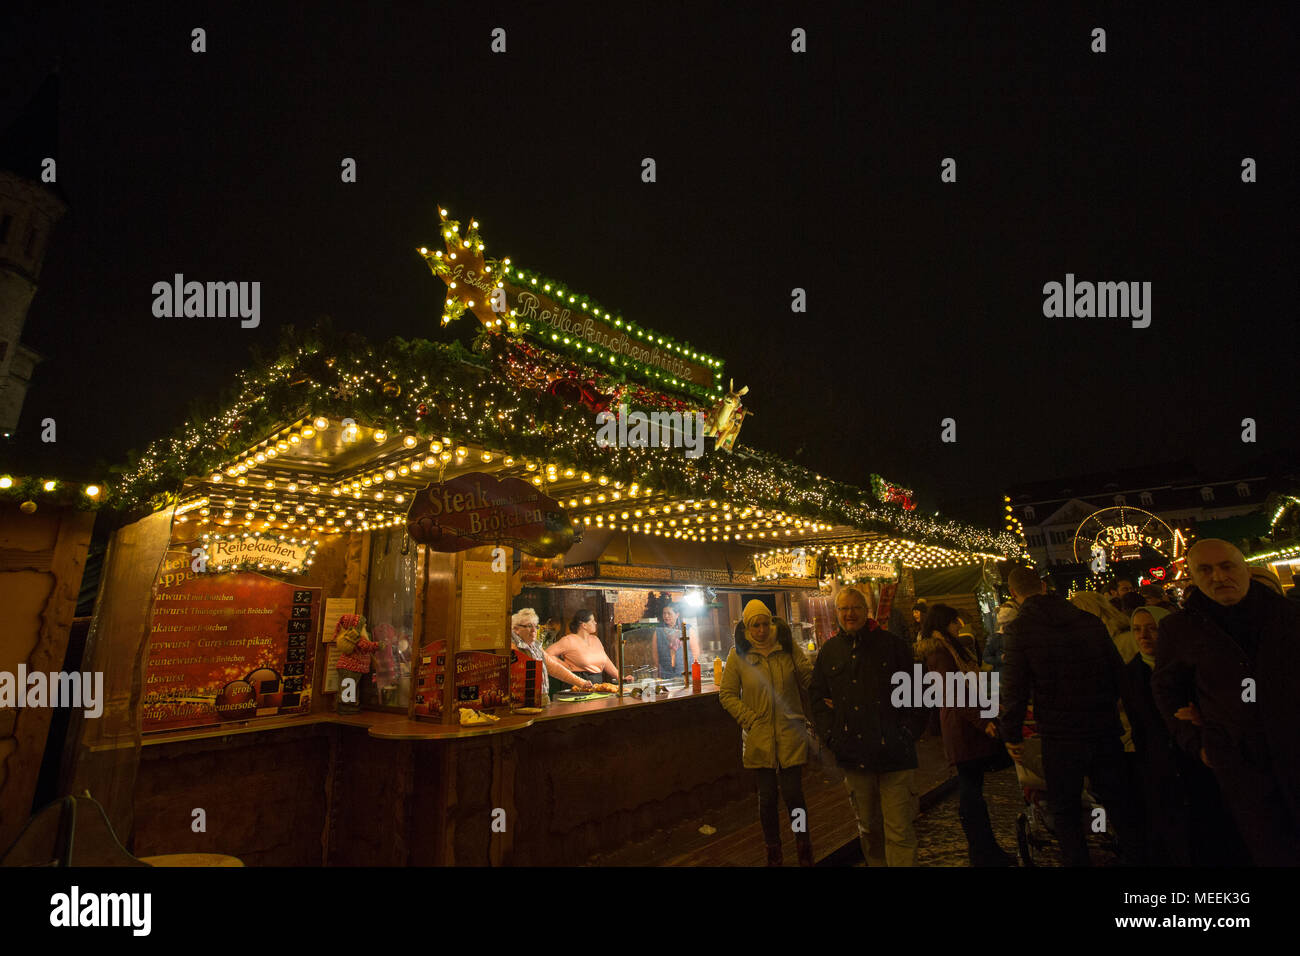 Traditionelle Weihnachtsmarkt oder Weihnachtsmarkt in Bonn, Nordrhein-Westfalen, Deutschland. Stockfoto